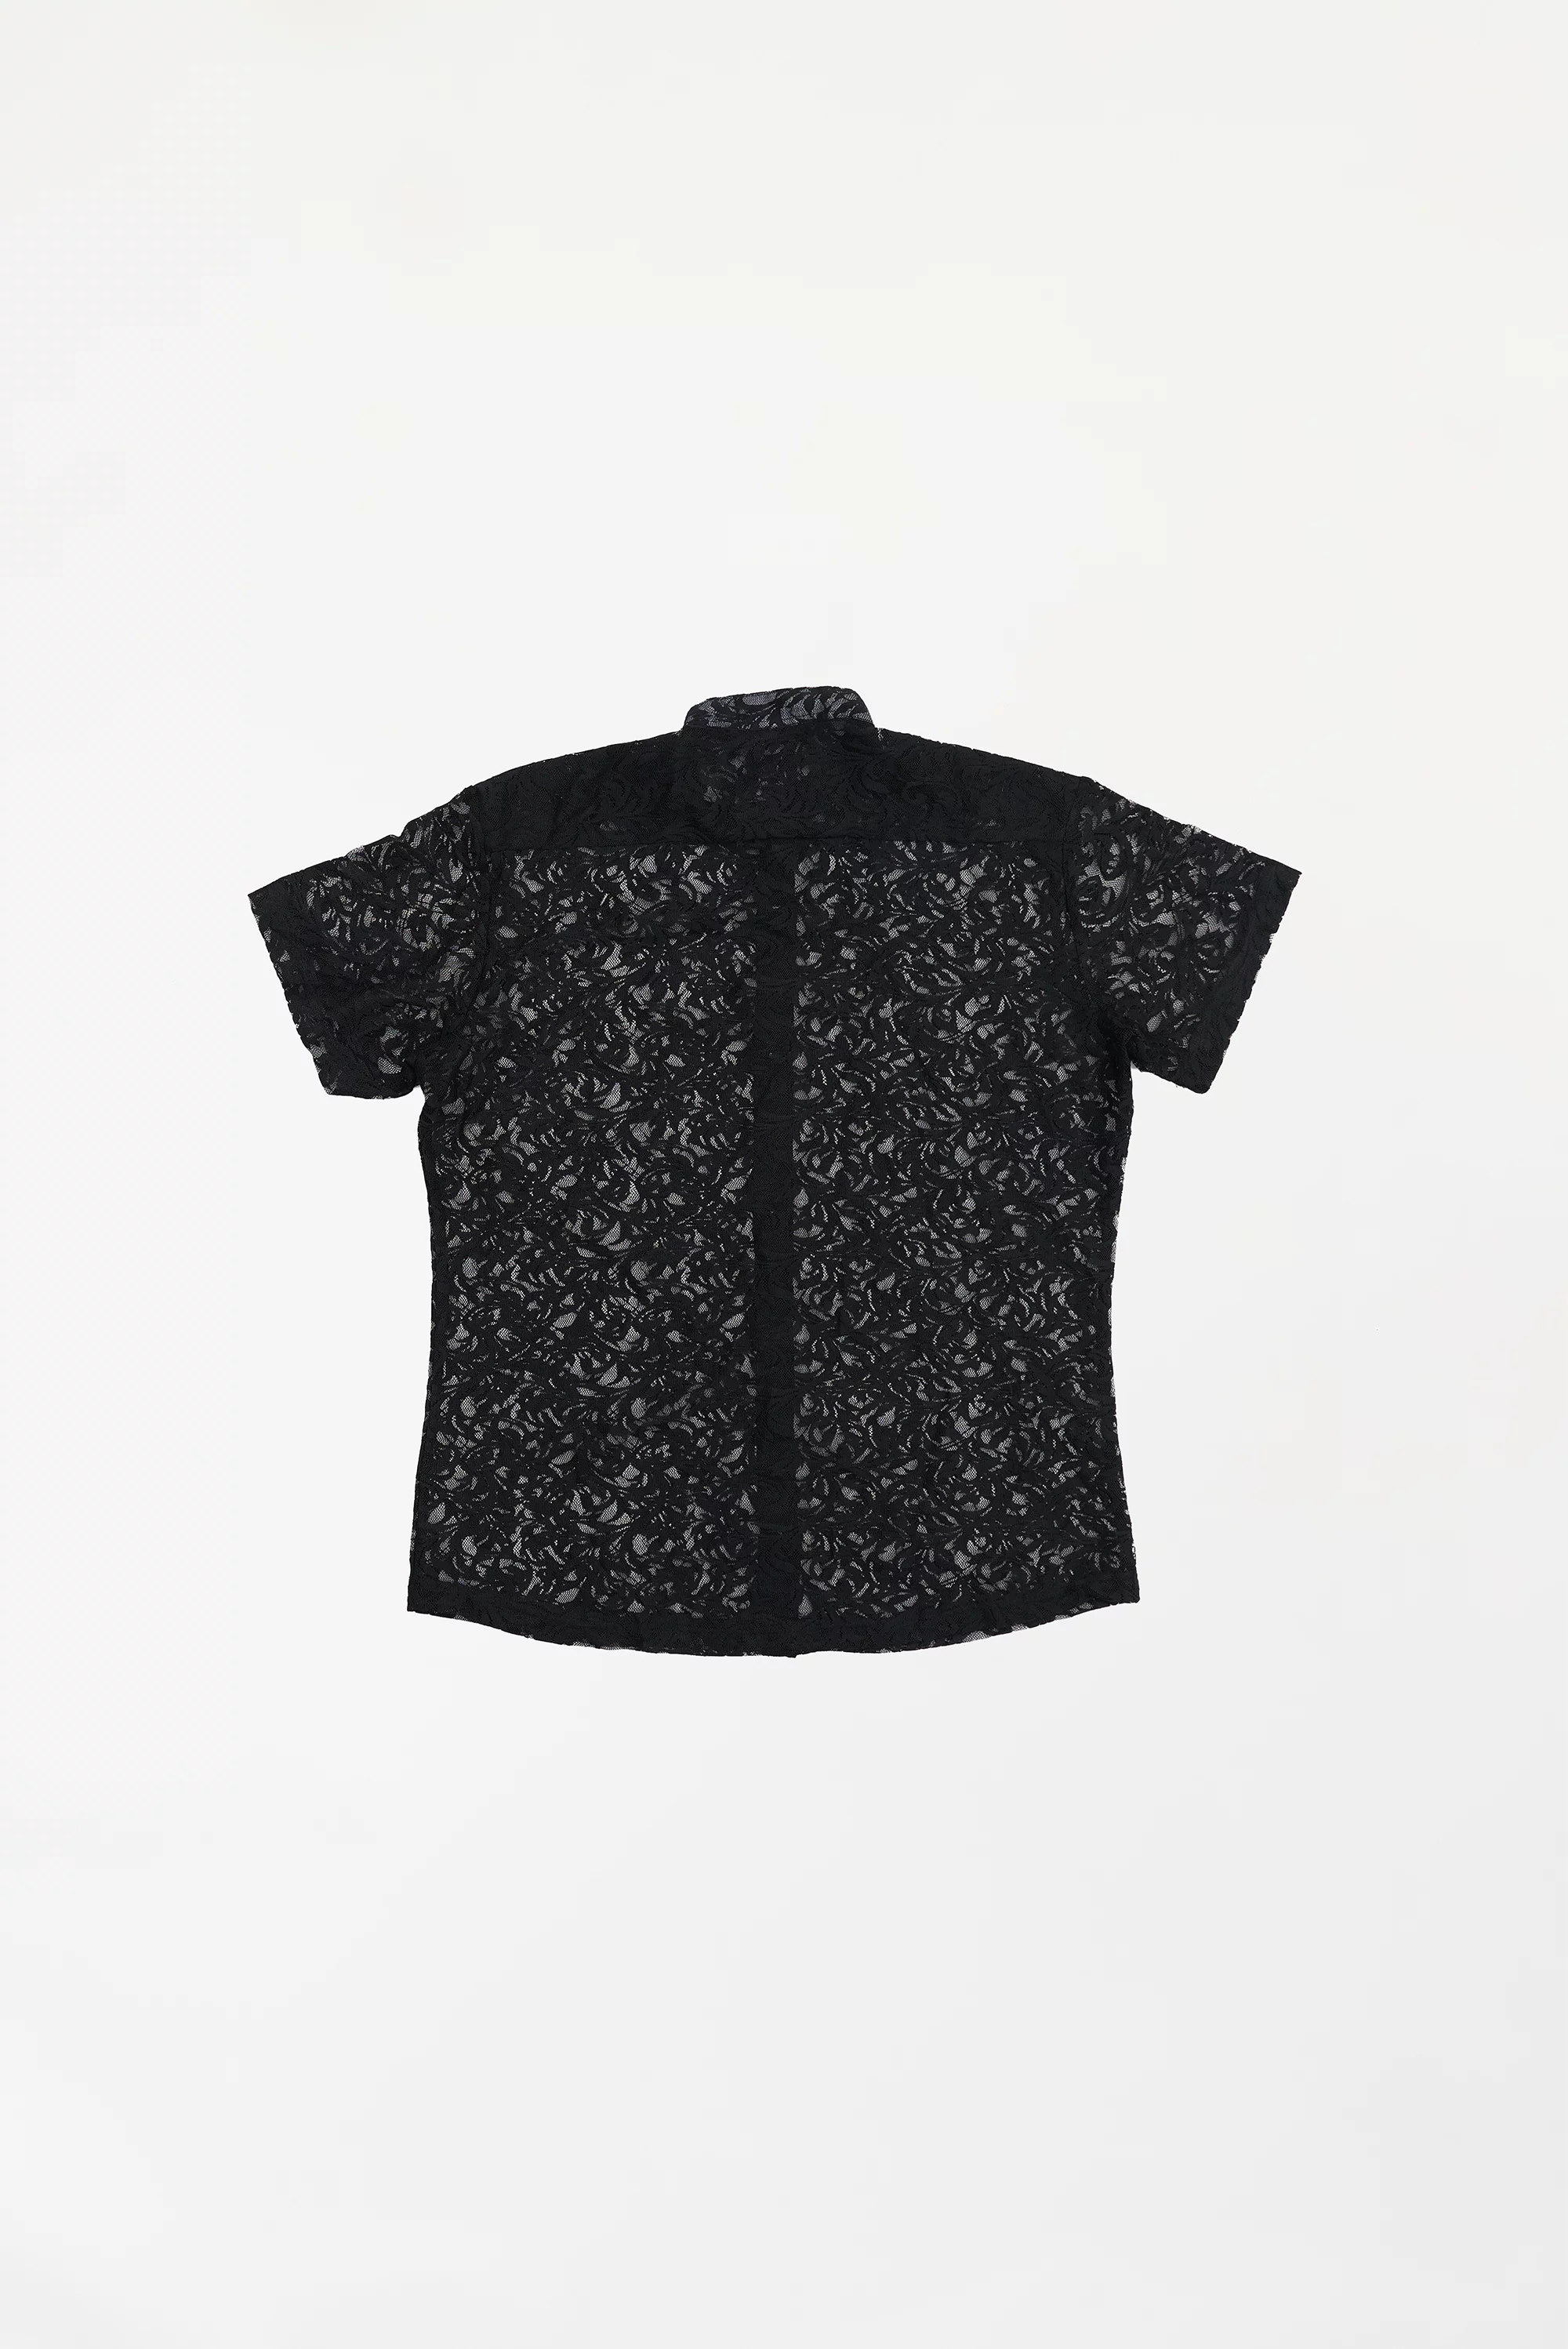 Men's Semi-Sheer Floral Shirt Black